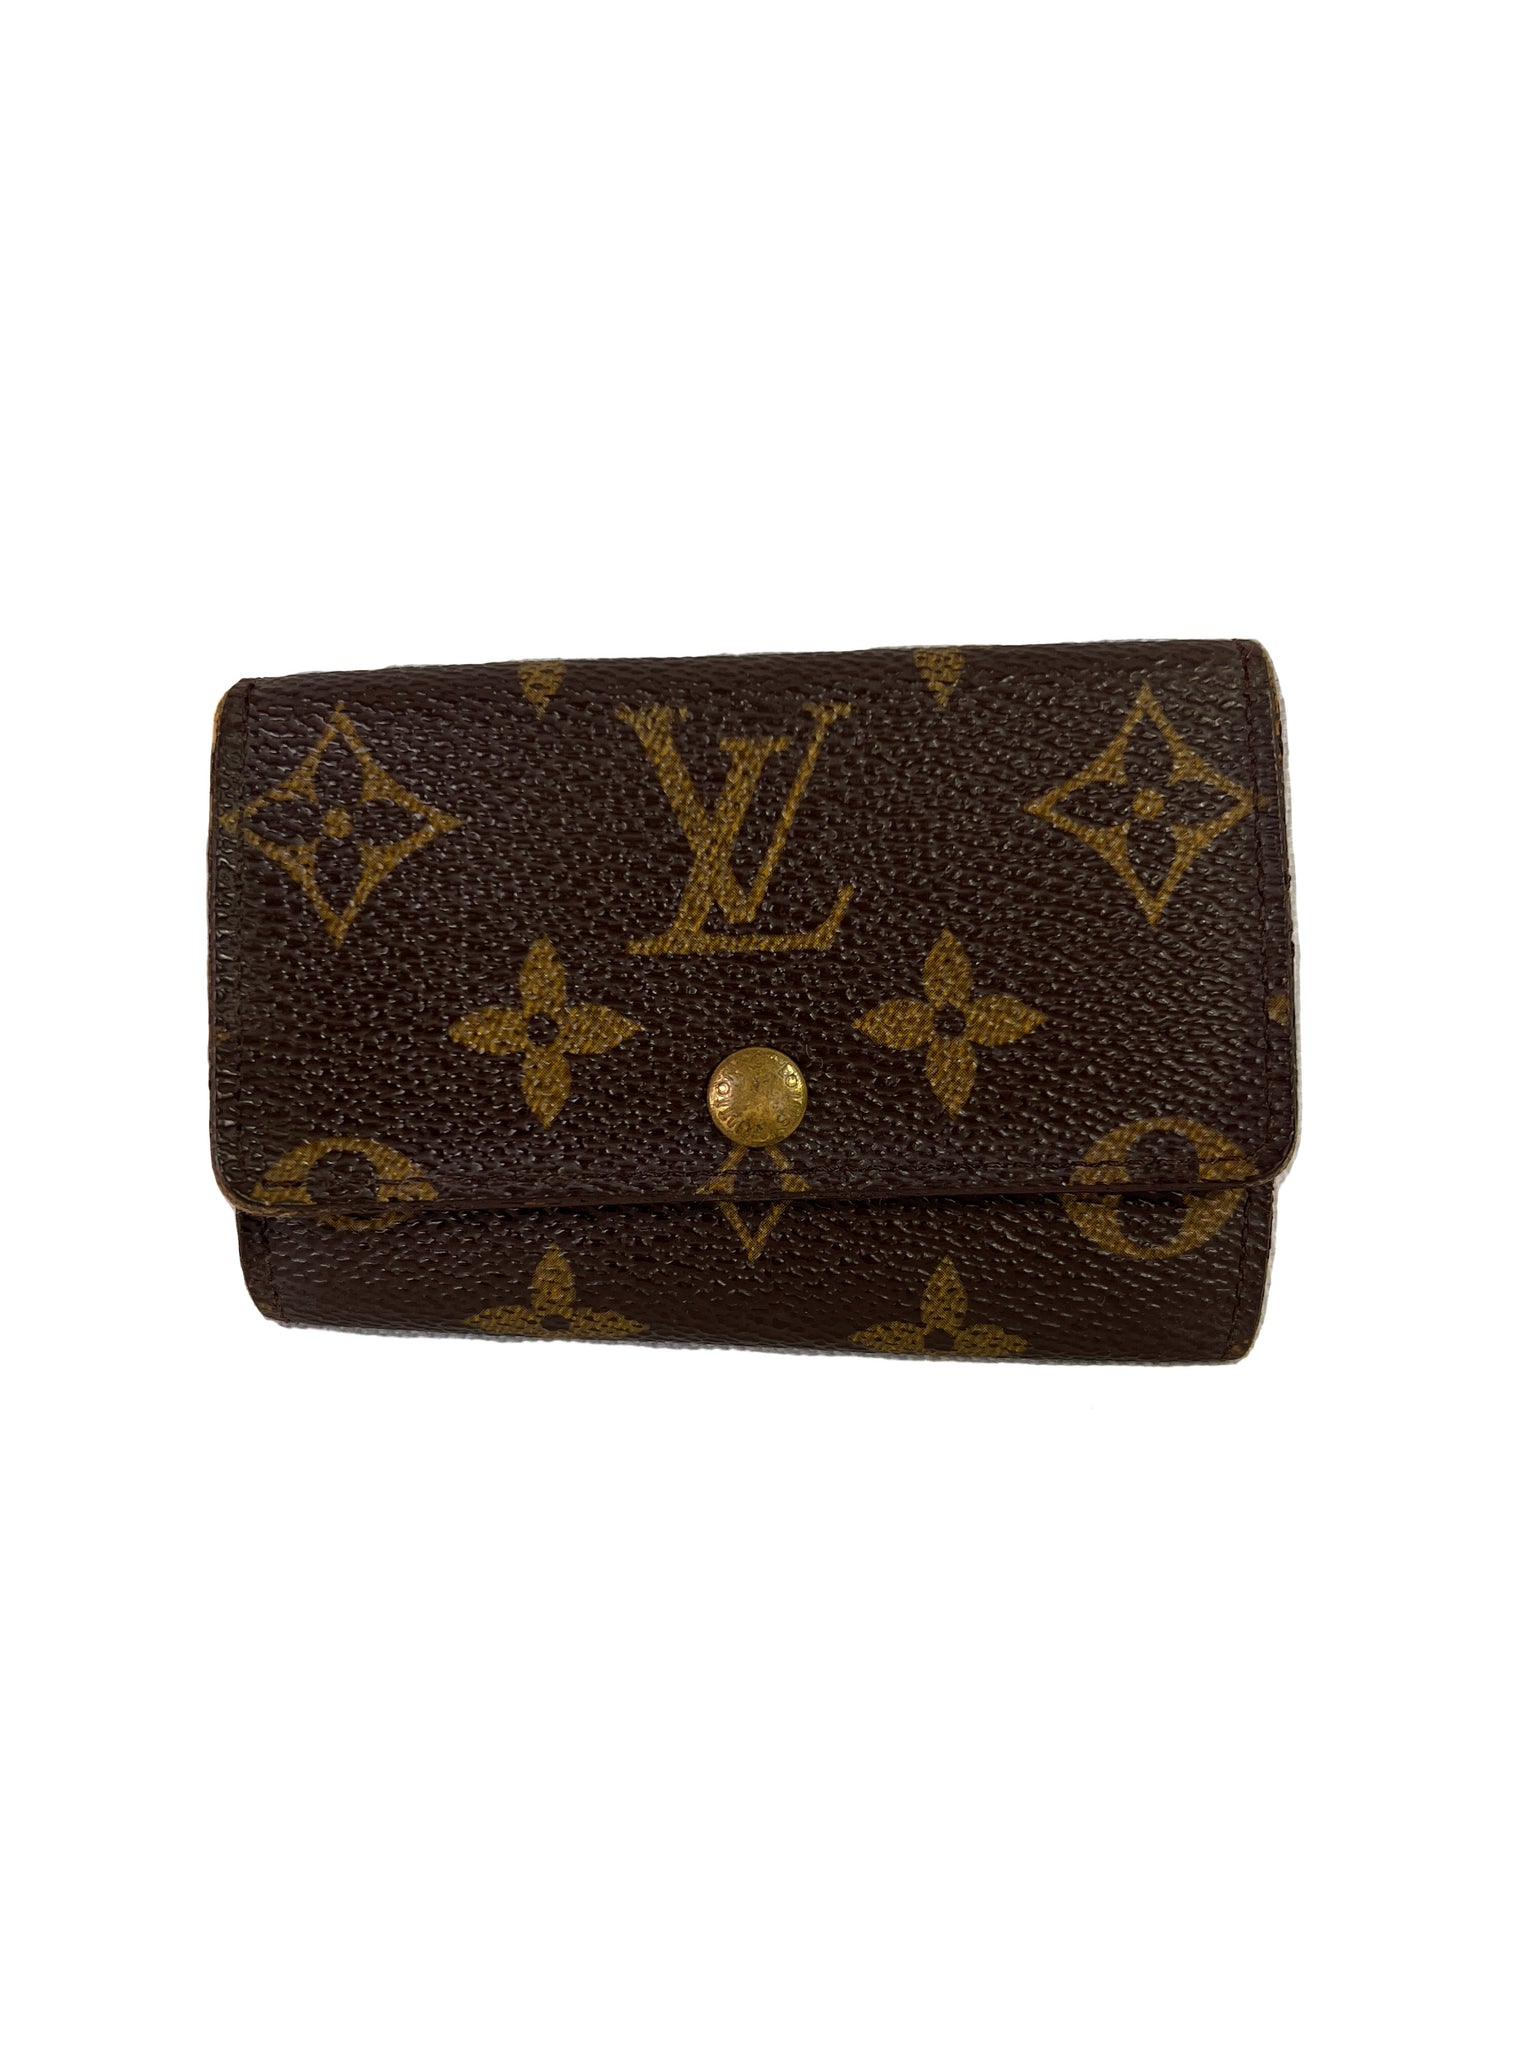 Louis Vuitton monogram vintage key holder – My Girlfriend's